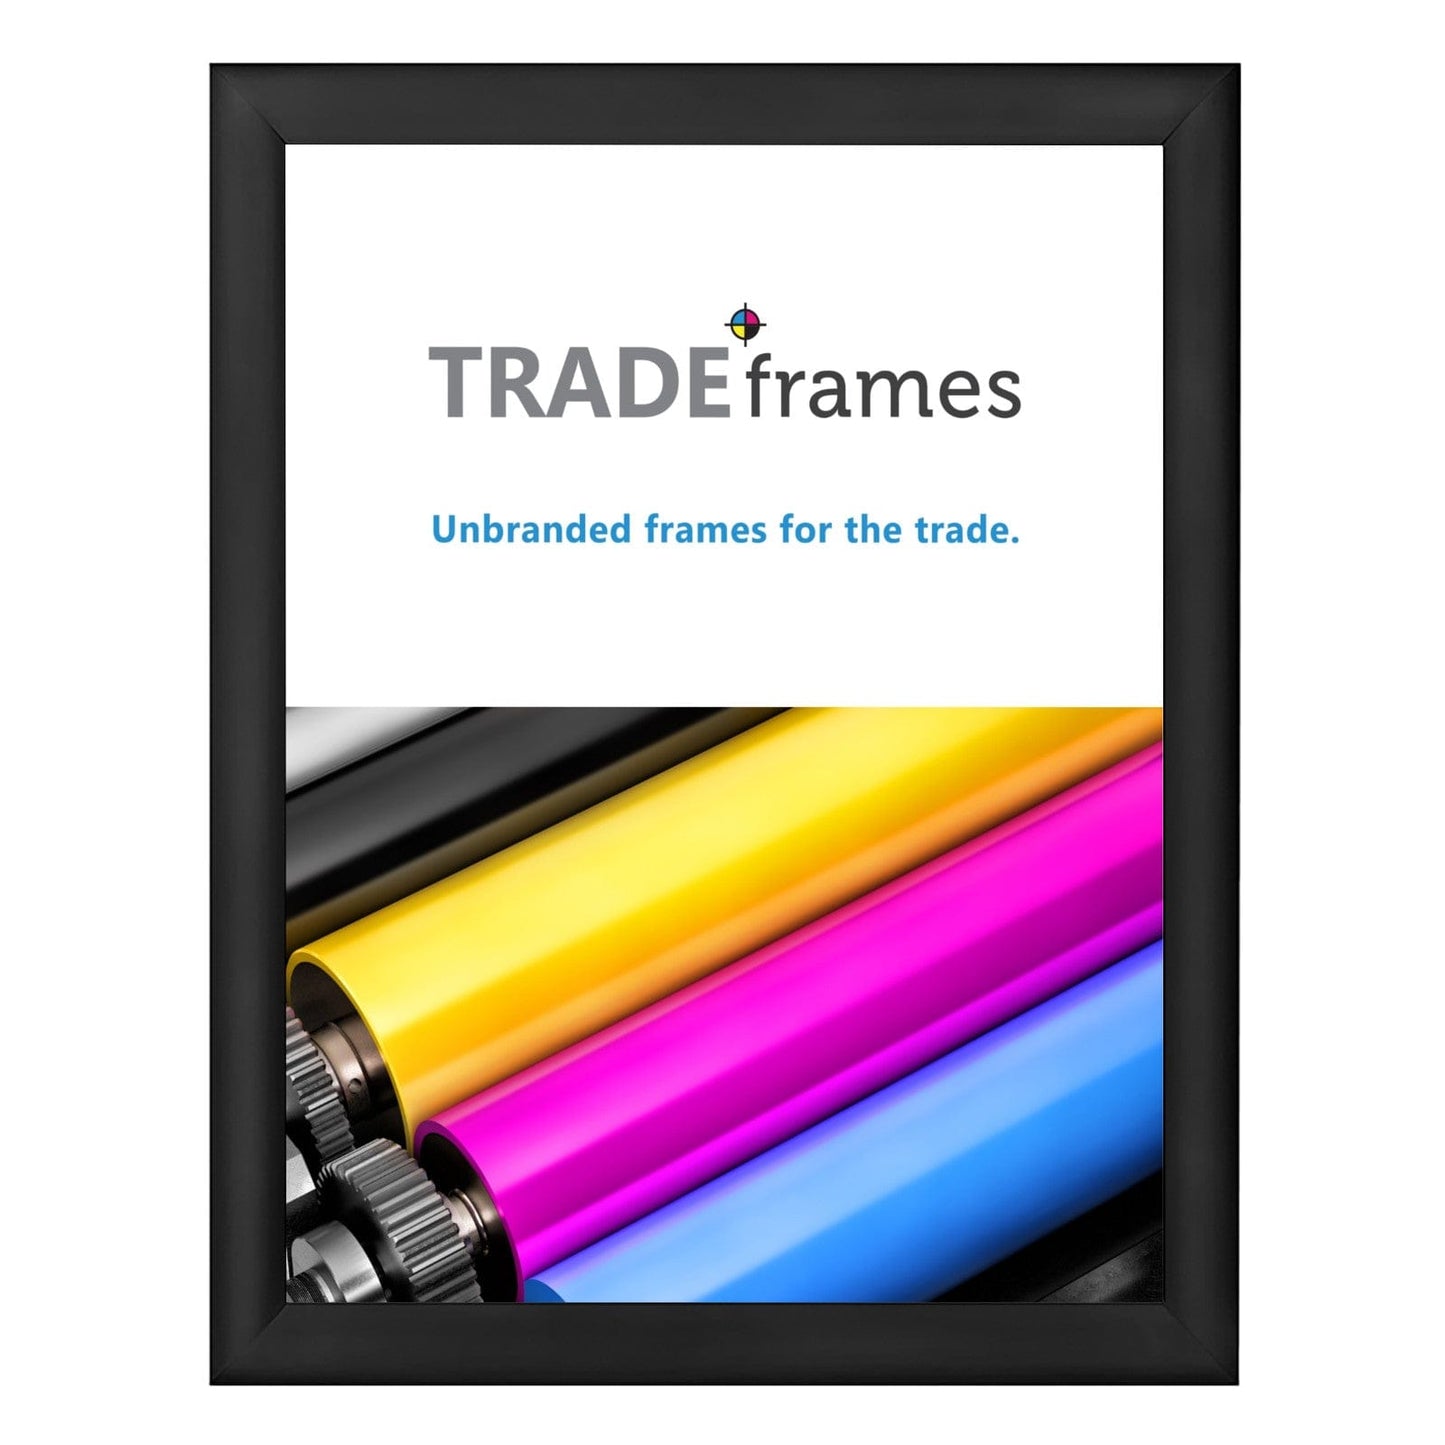 30x40 Black Snap Frame - 1.2" Profile - Snap Frames Direct